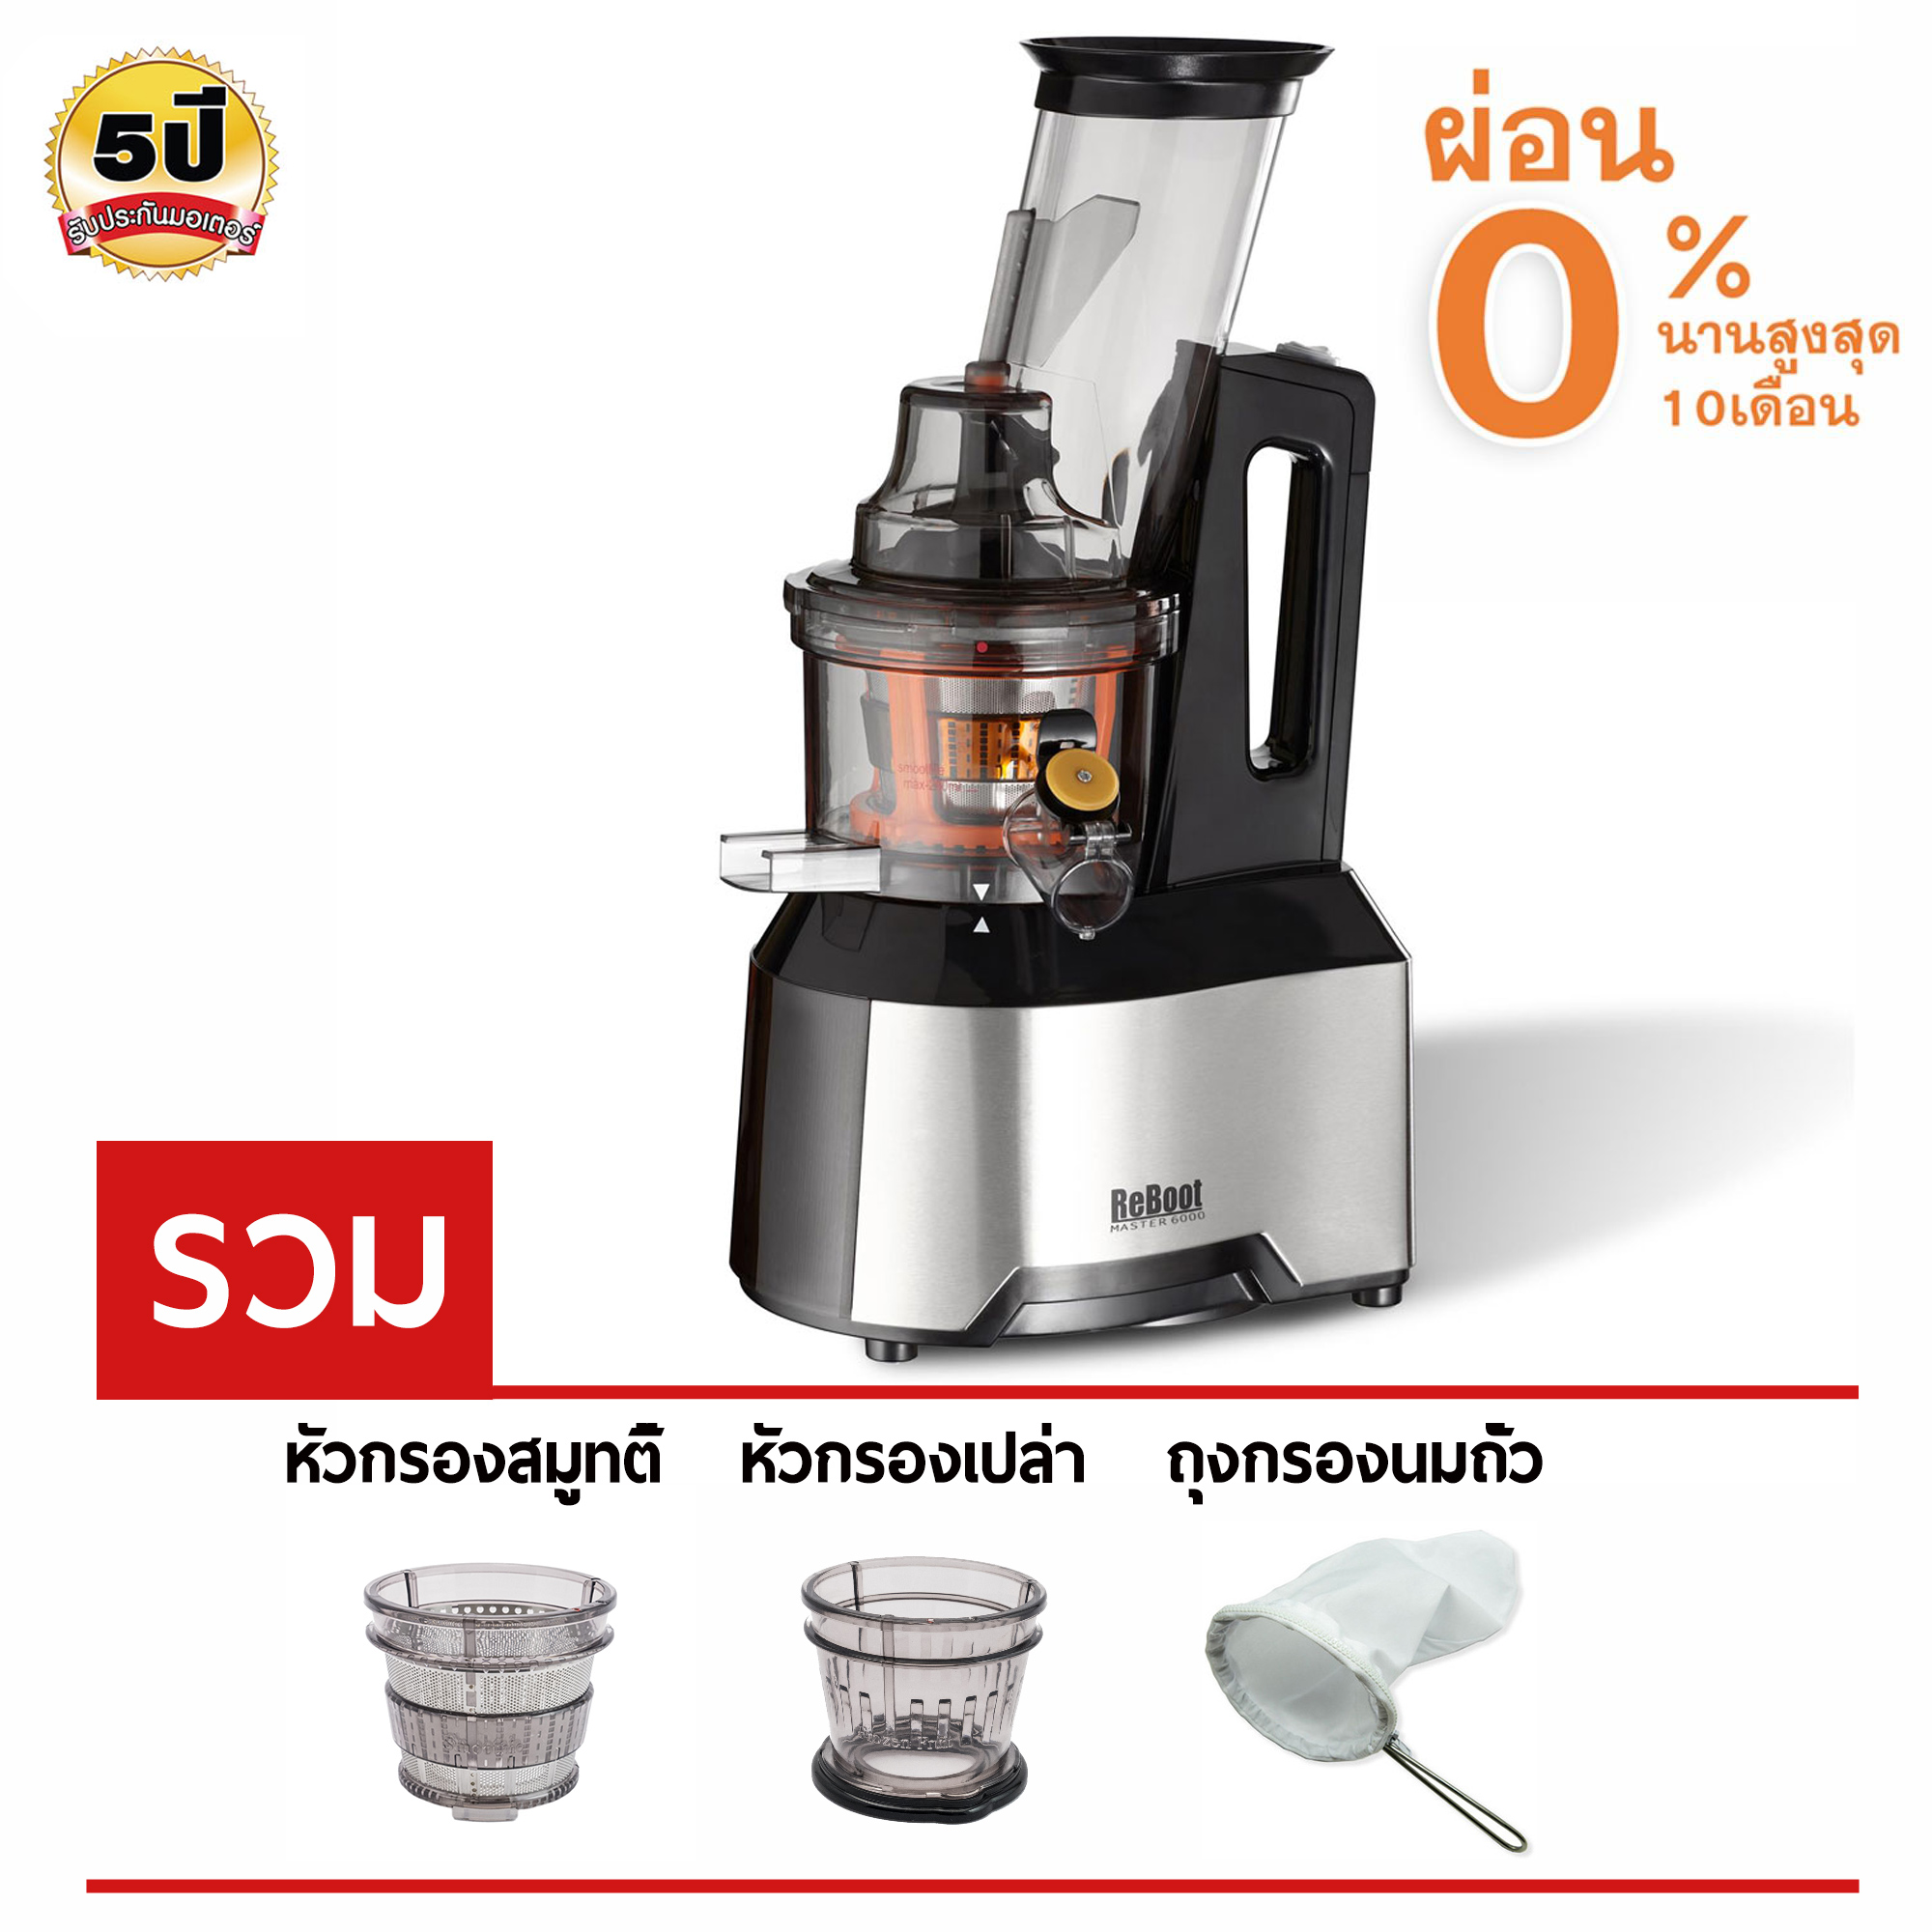 ReBoot  Master 6000 Juicer เครื่องสกัดน้ำผักผลไม้  (Black) เครื่องคั้นน้ำผลไม้ รอบต่ำ สกัดเย็น รวม หัวกรองเปล่า หัวกรองสมูทตี้ ถุงกรองนมถั่ว  สำหรับผ่อนชำระ Thailandjuicer Shop